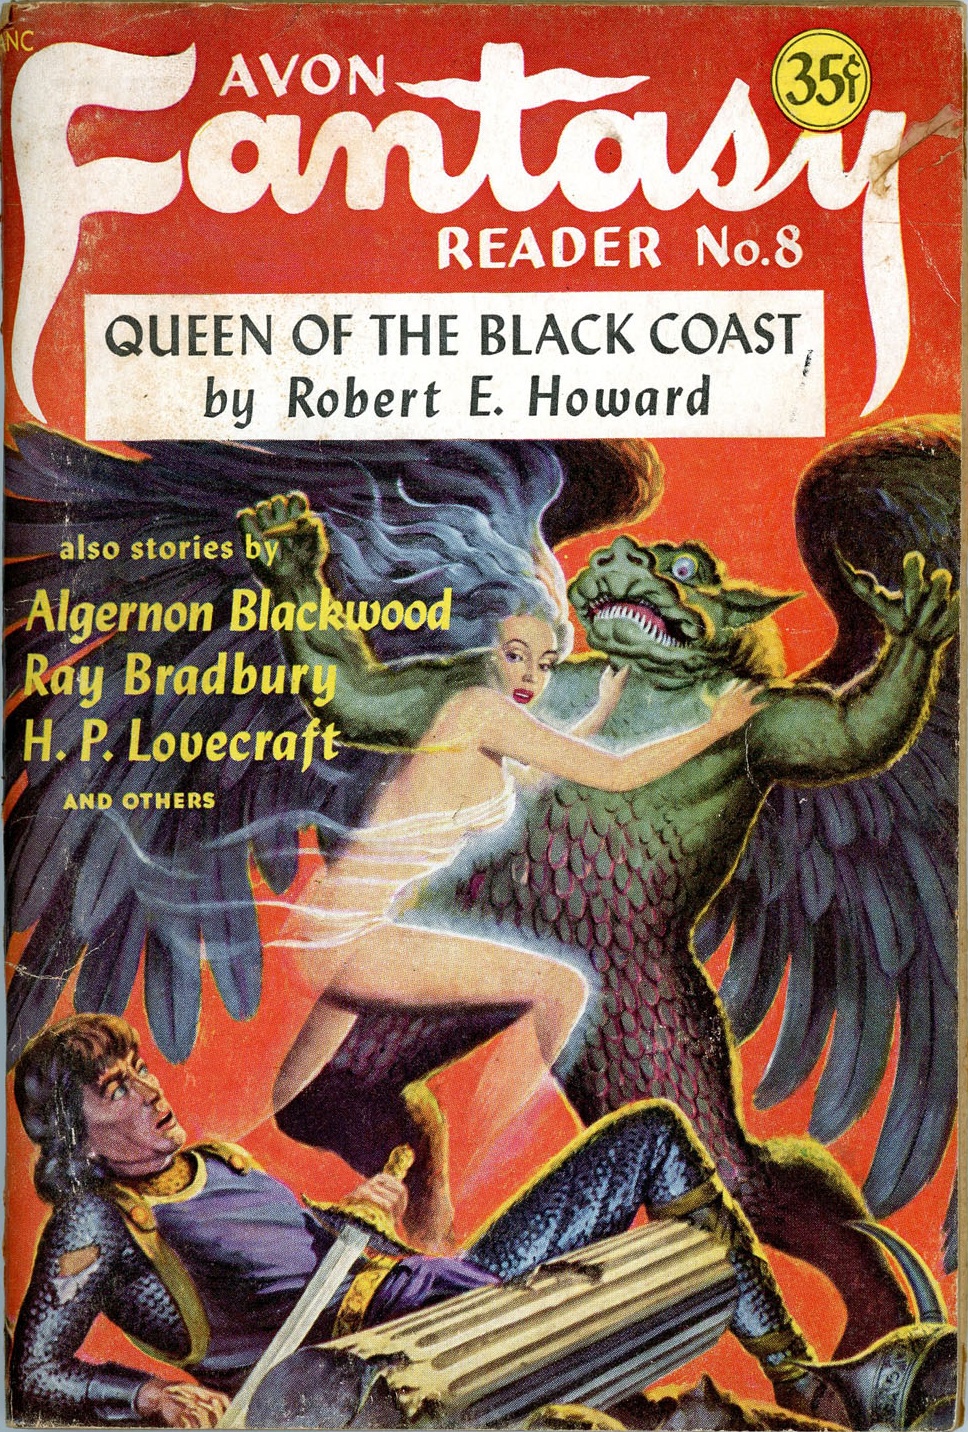 Avon Fantasy Reader #8 1948